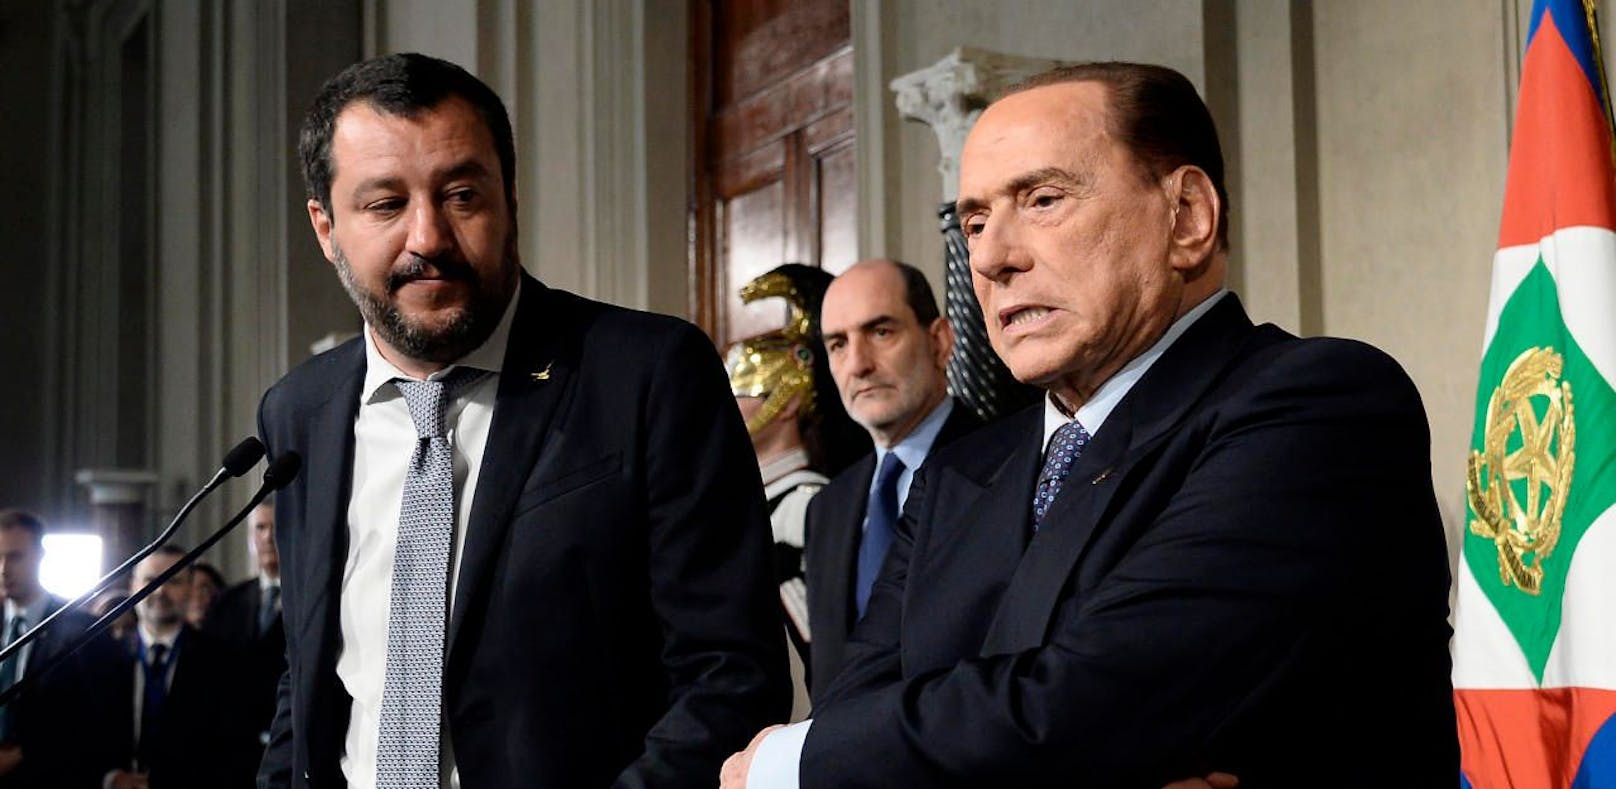 Lega-Chef Matteo Salvini (l.) und Silvio Berlusconi bei den Regierungsverhandlungen.